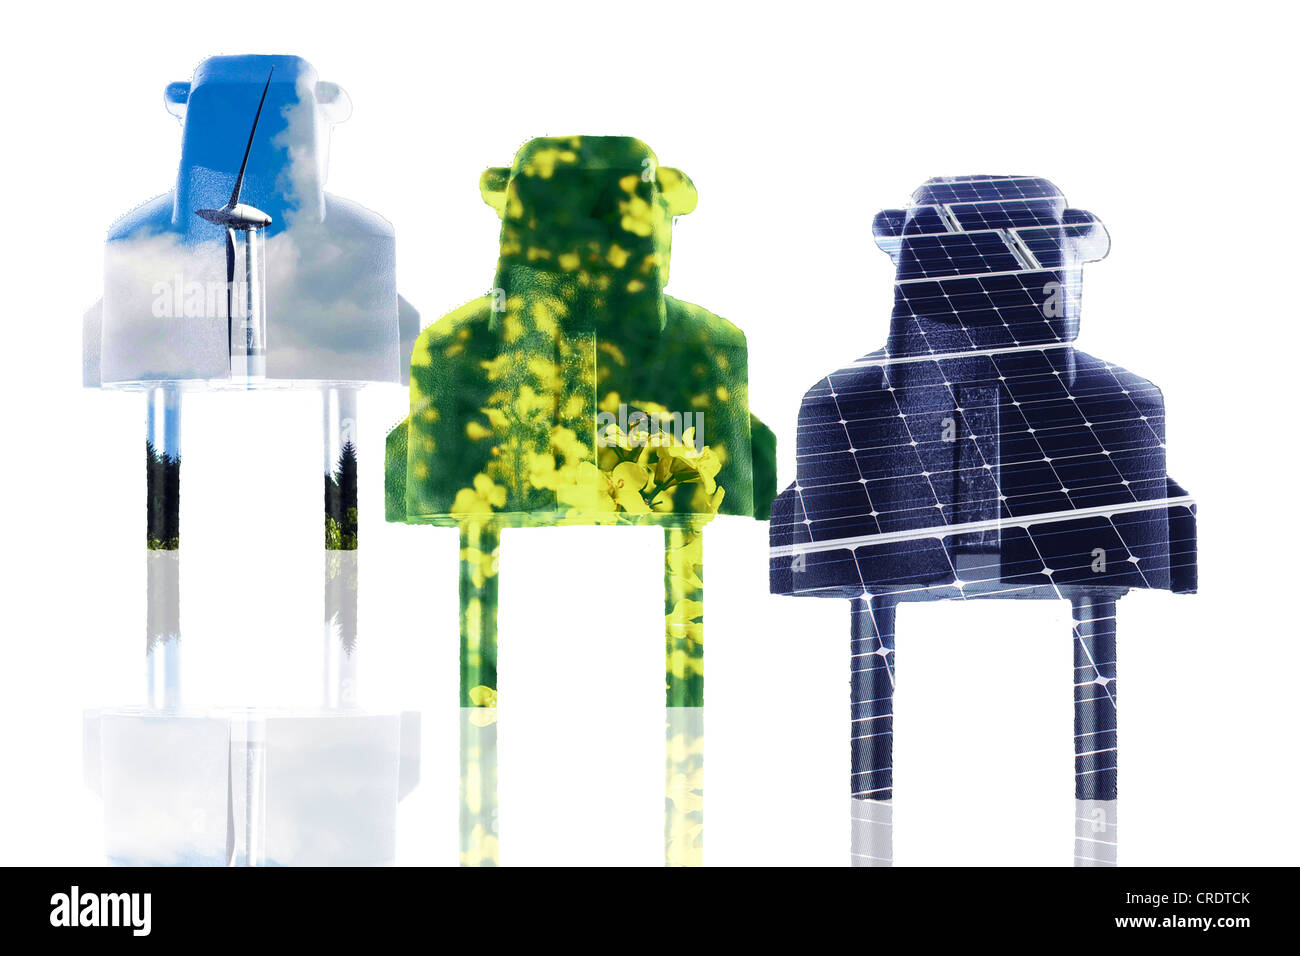 Abbildung, Power-Stecker, symbolisches Bild für erneuerbare Energien Stockfoto